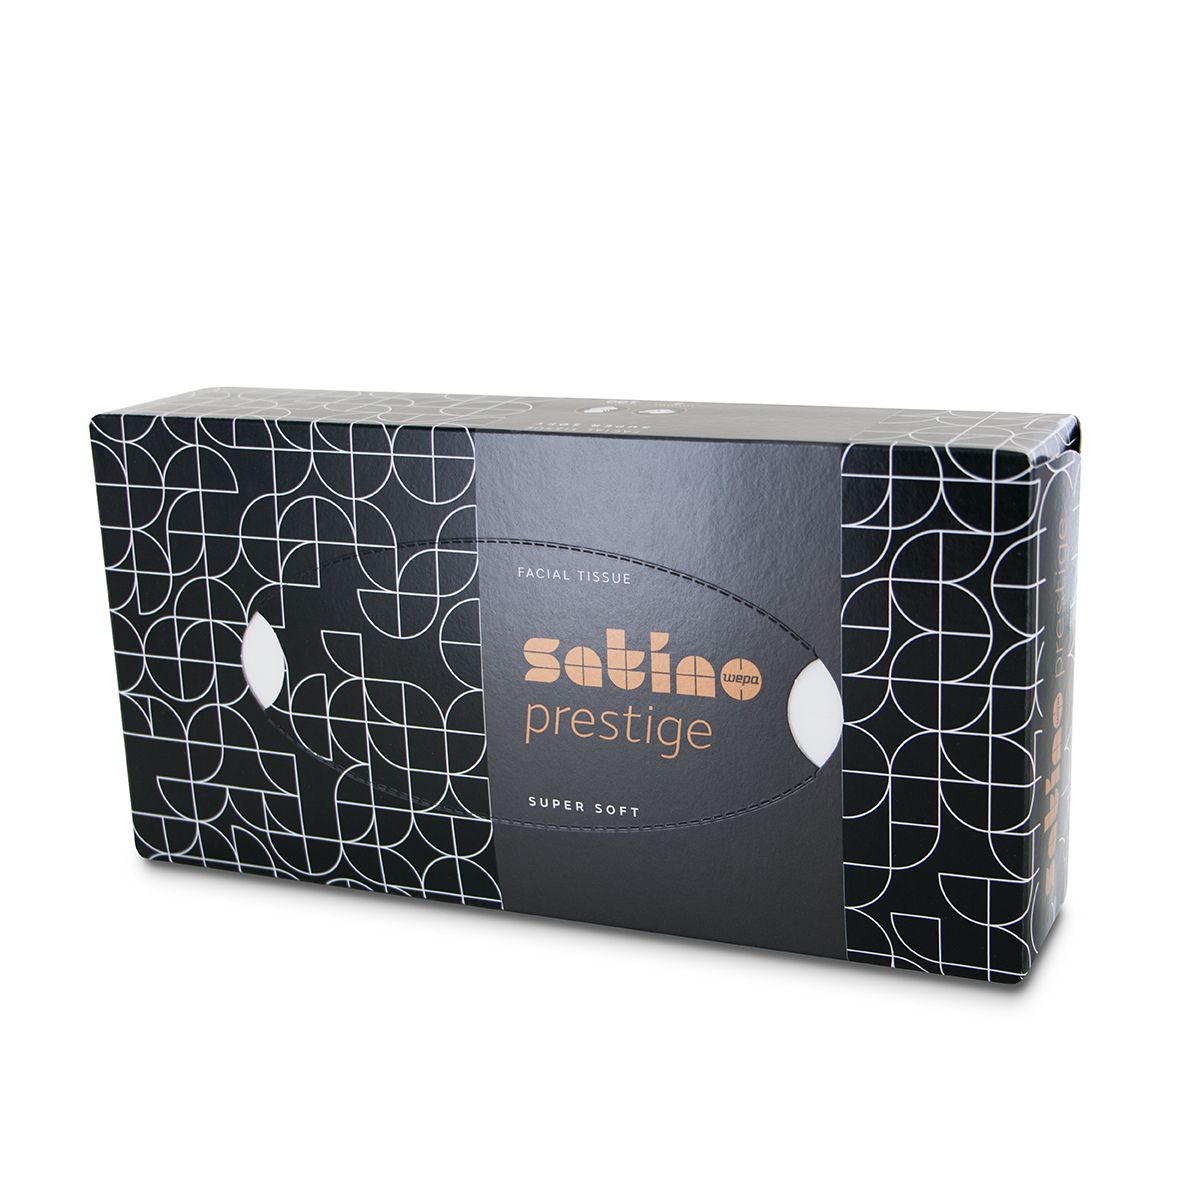 verschiedene Designs der Wepa Kosmetiktücher 2-lagig Satino Prestige